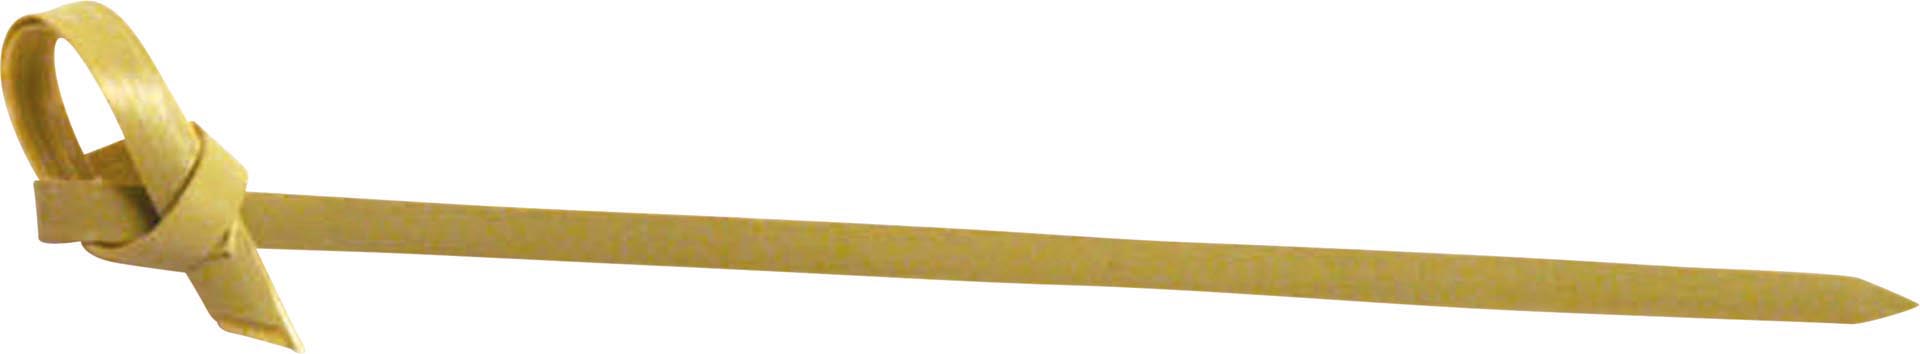 Picker "Knoten" 0,3x0,2x10,5cm Bambus